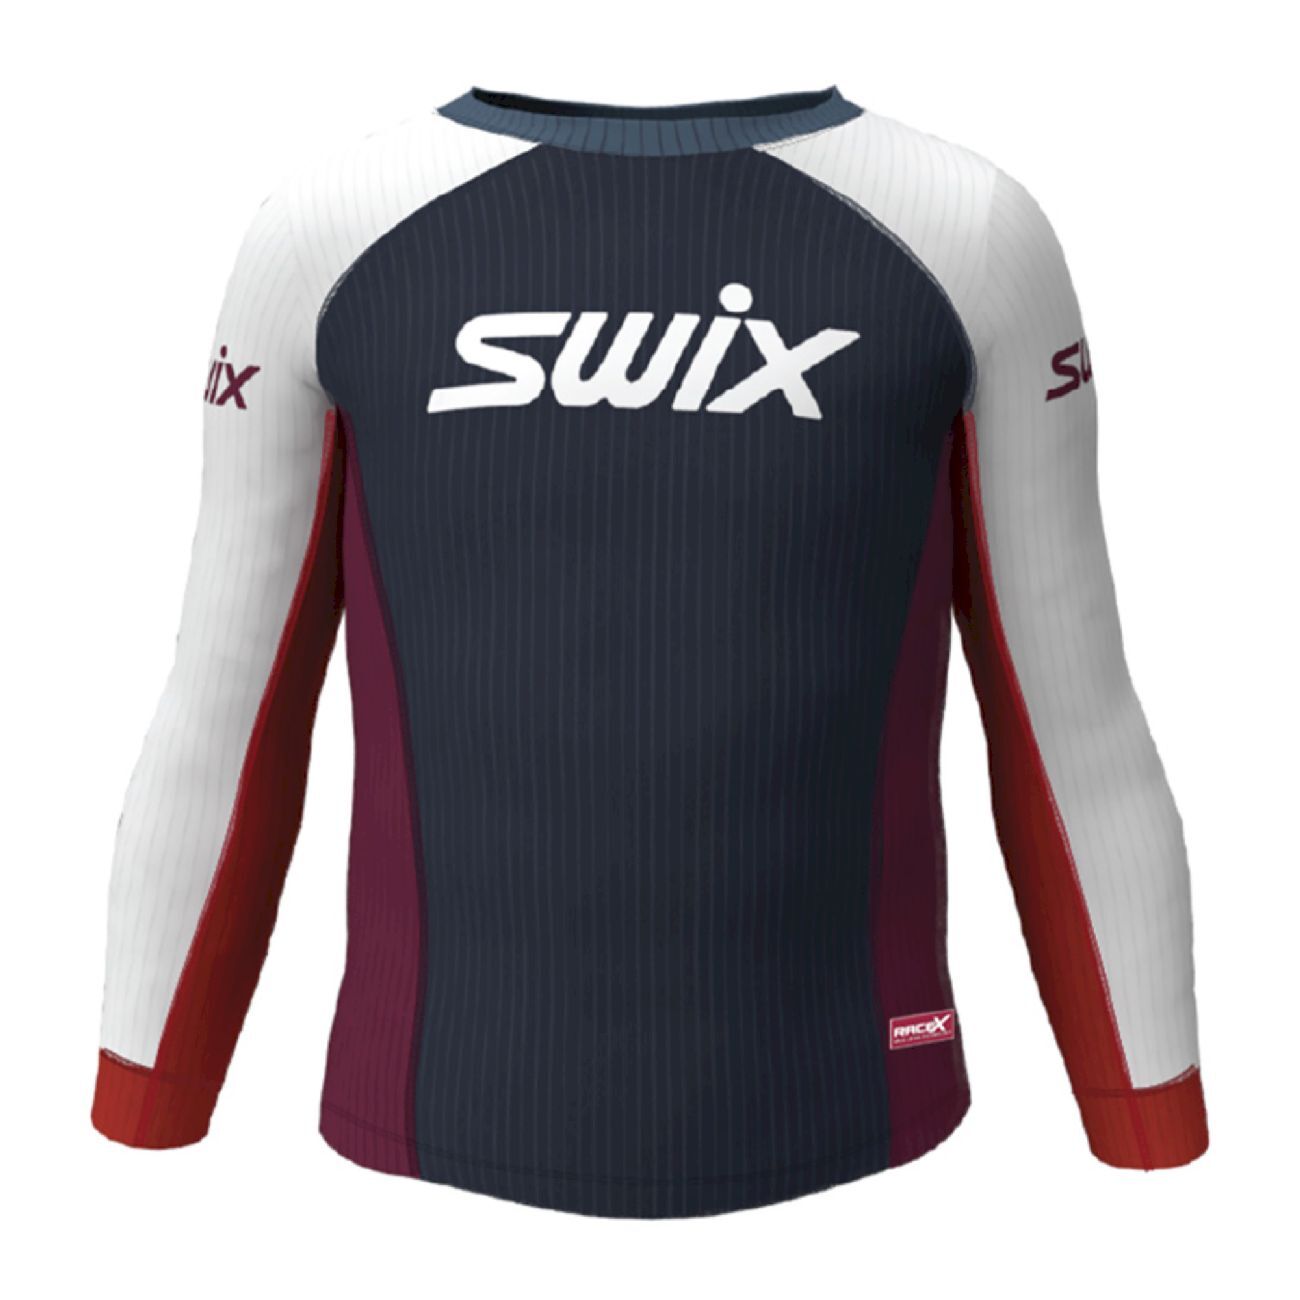 Swix Racex Bodywear Junior - Funktionsunterwäsche - Kind